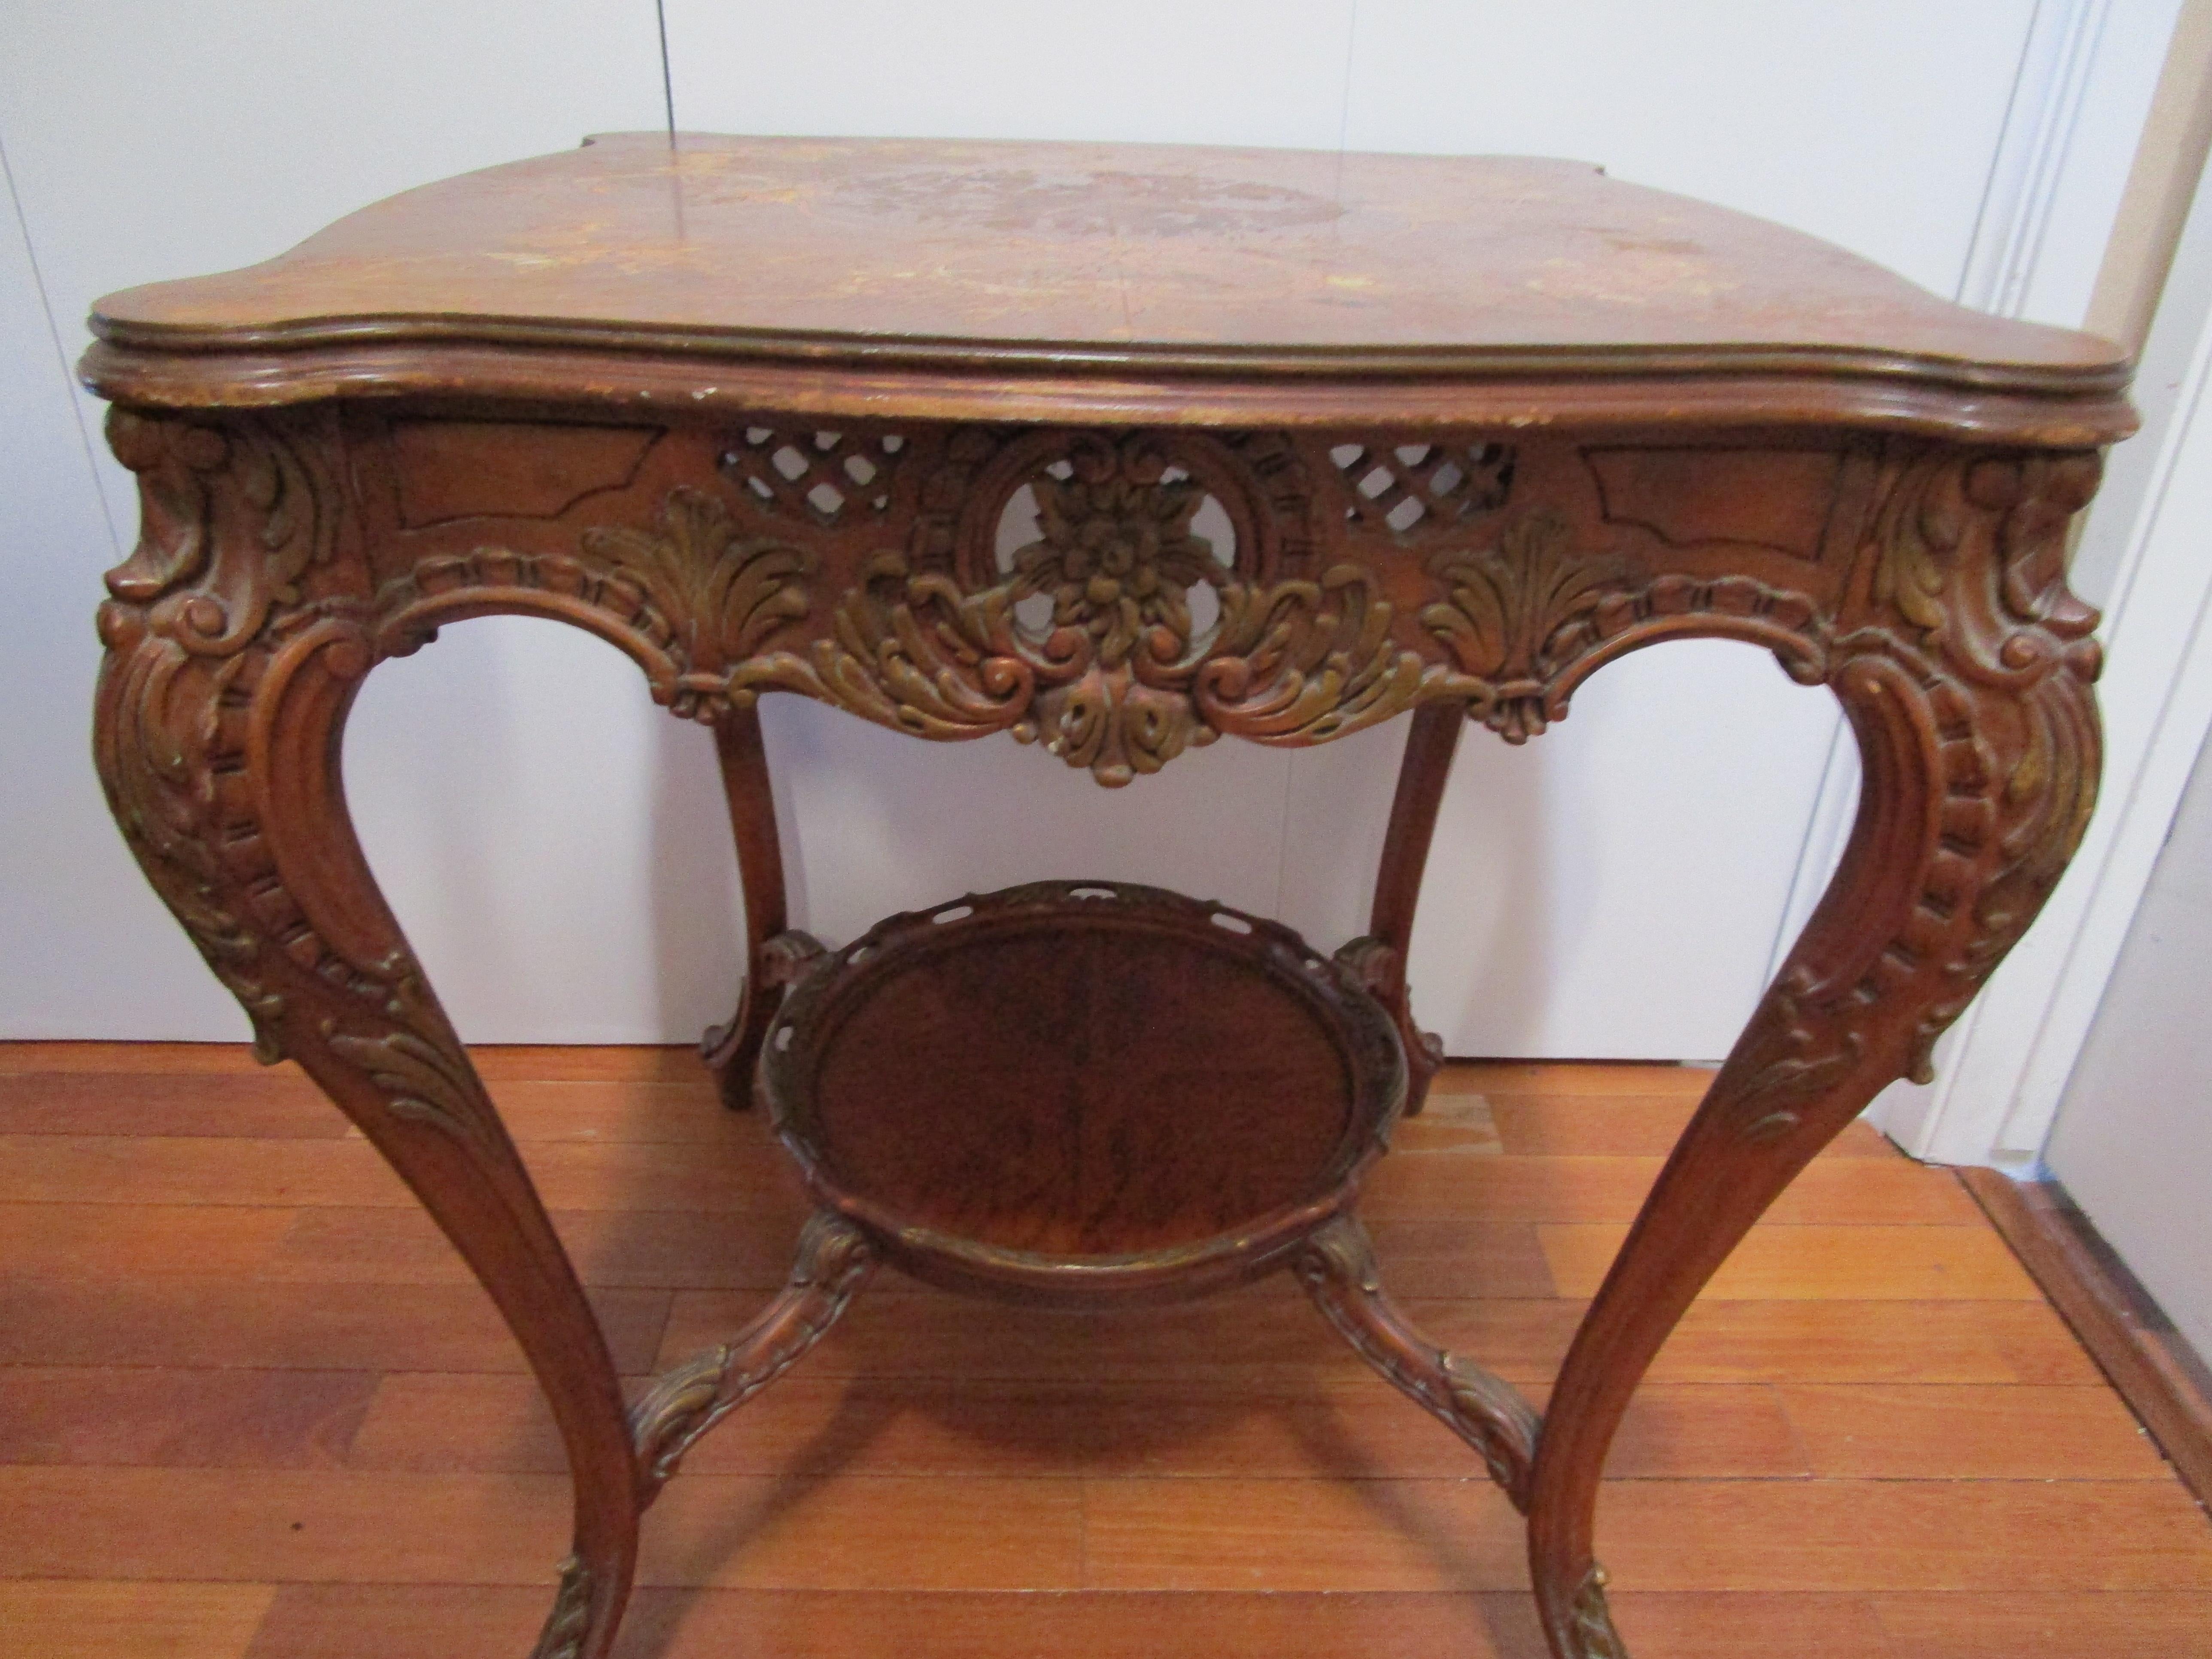 La marqueterie et la ronce, expertement travaillées dans une table d'appoint ou d'entrée de style Louis XVI du 19e siècle, font sensation. 
La table a été fabriquée en France à la fin du 19e siècle. 
Fidèle au style du 